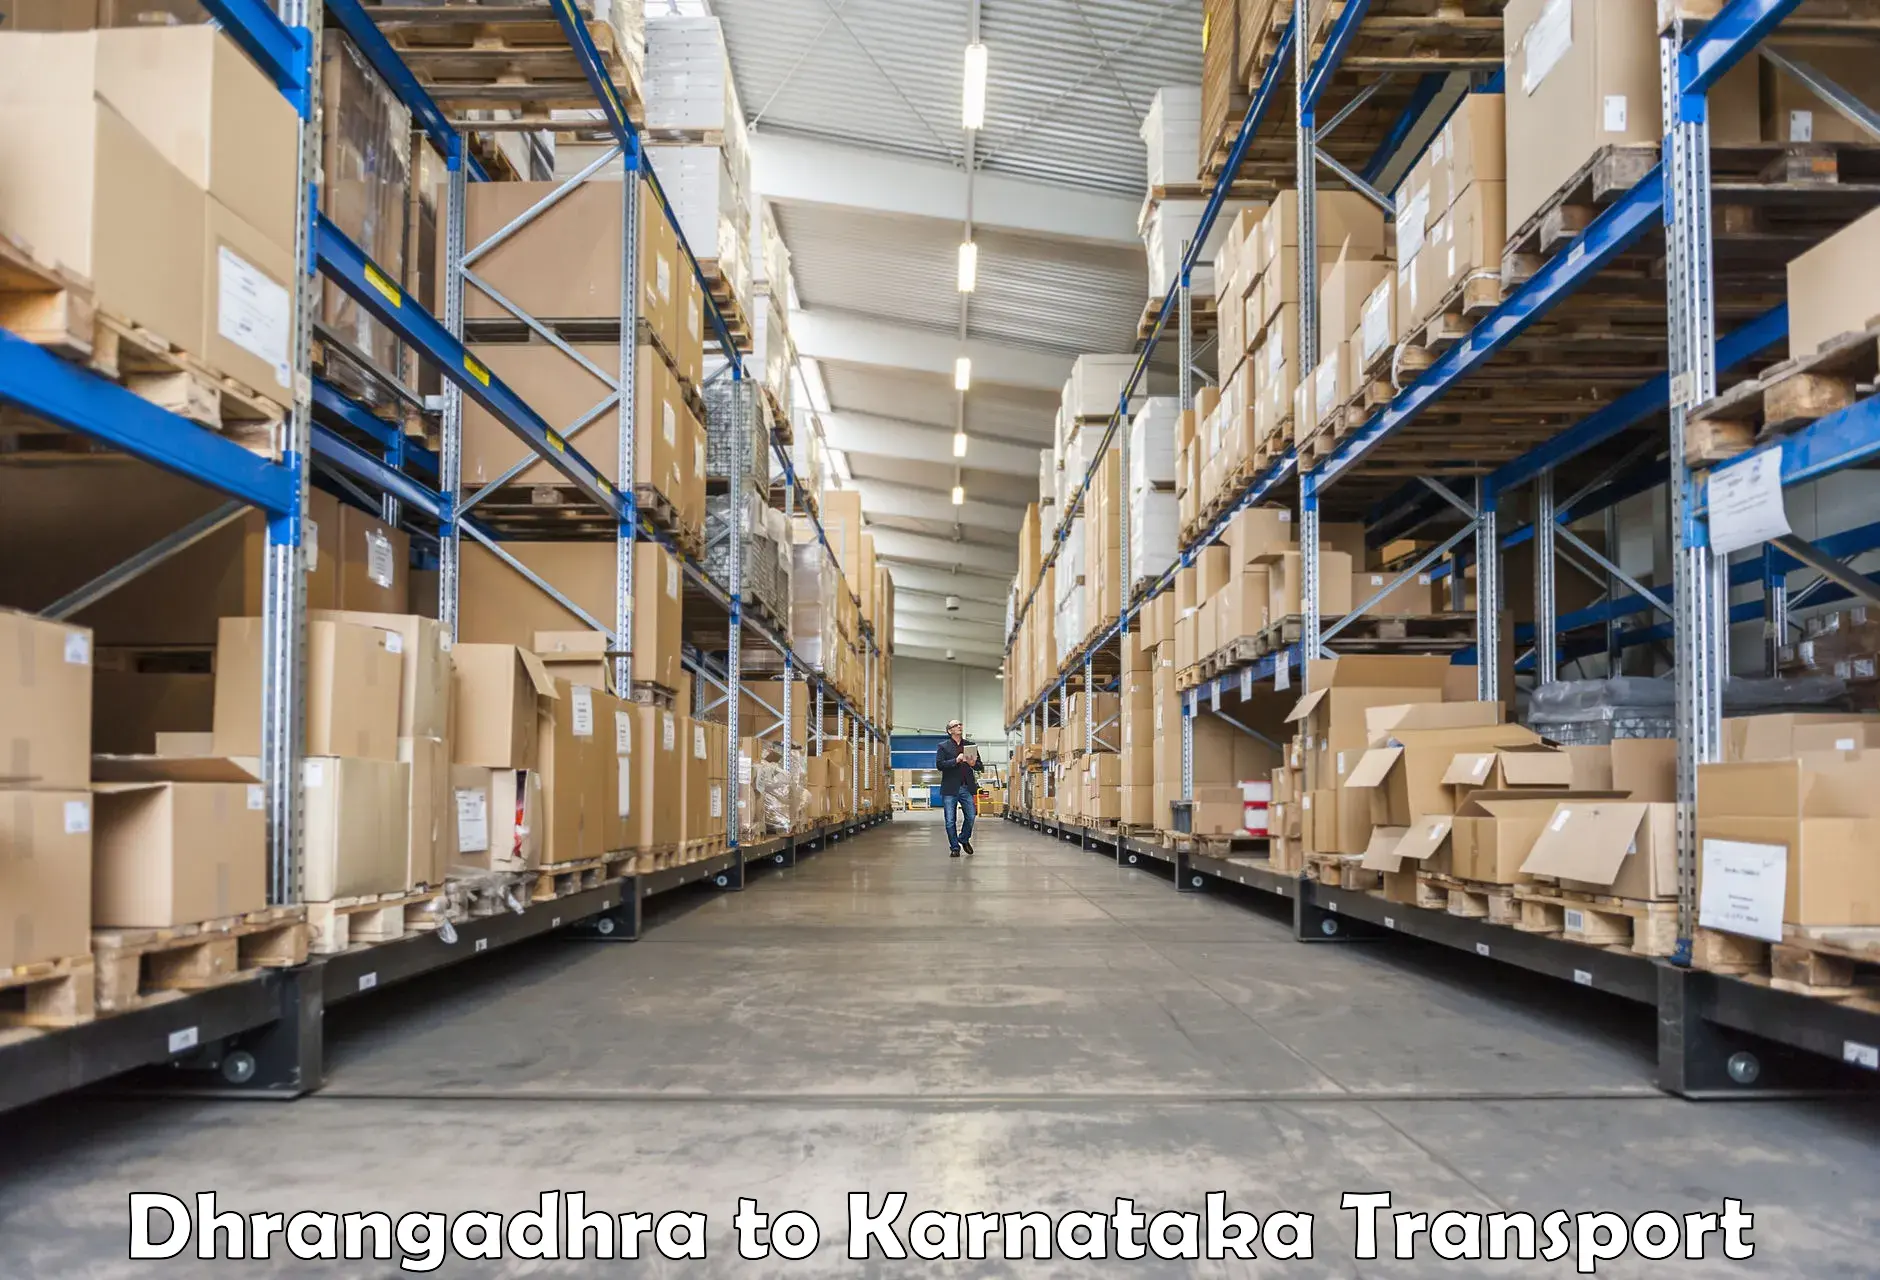 Pick up transport service Dhrangadhra to Kushtagi